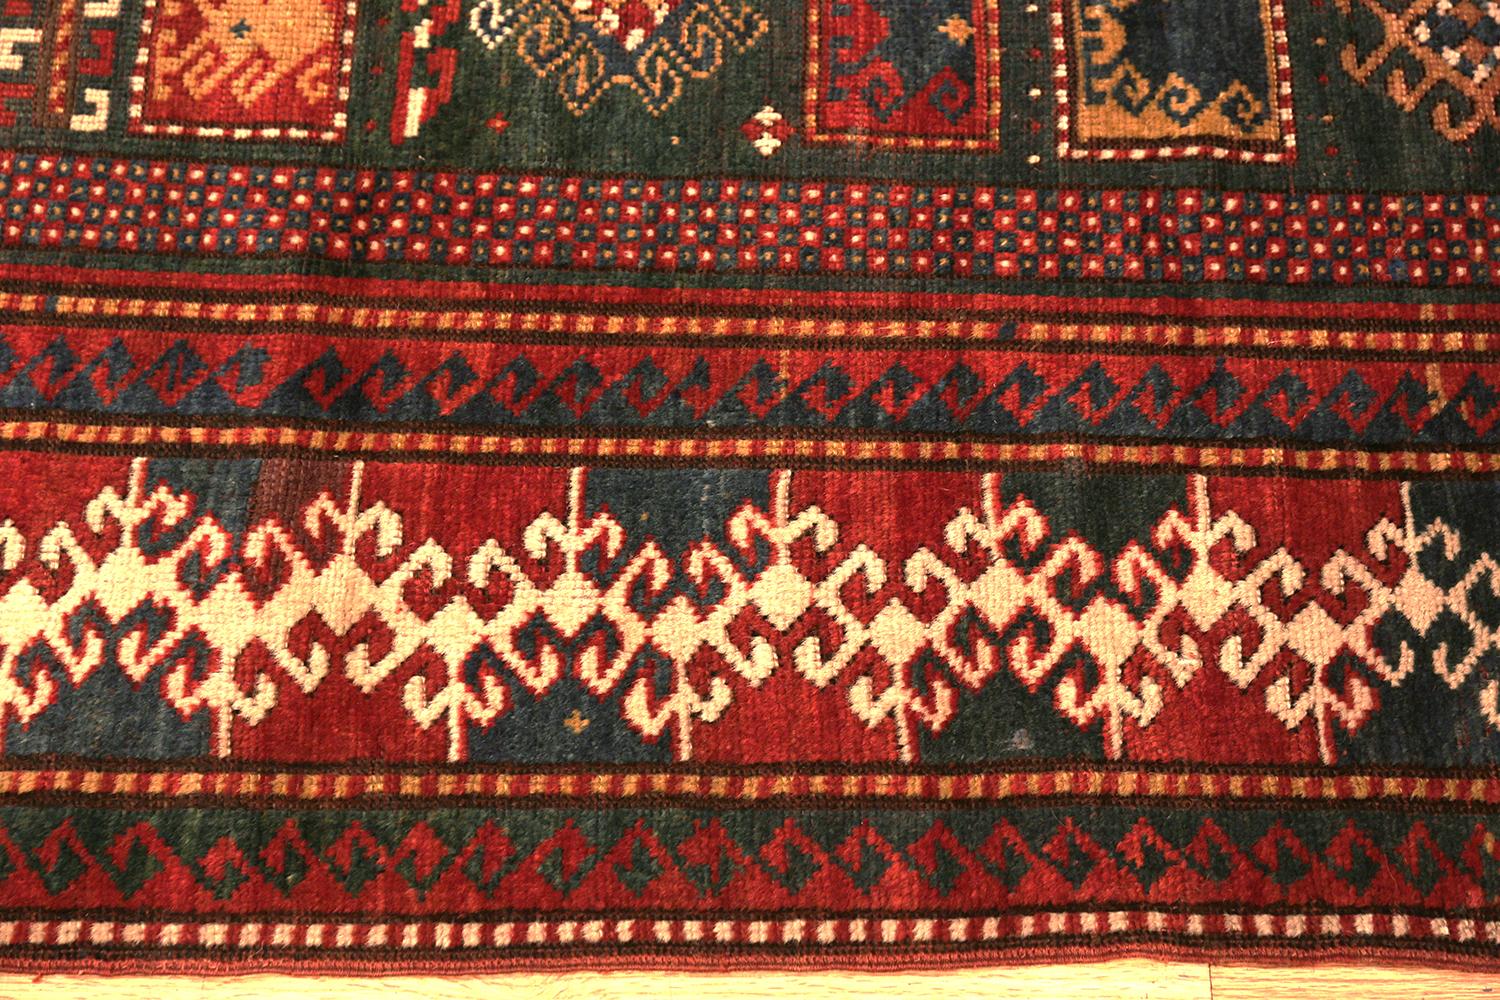 Beautiful antique Caucasian Kazak rug, country of origin: Caucasus, date circa 1880. Size: 5 ft 4 in x 7 ft (1.63 m x 2.13 m).